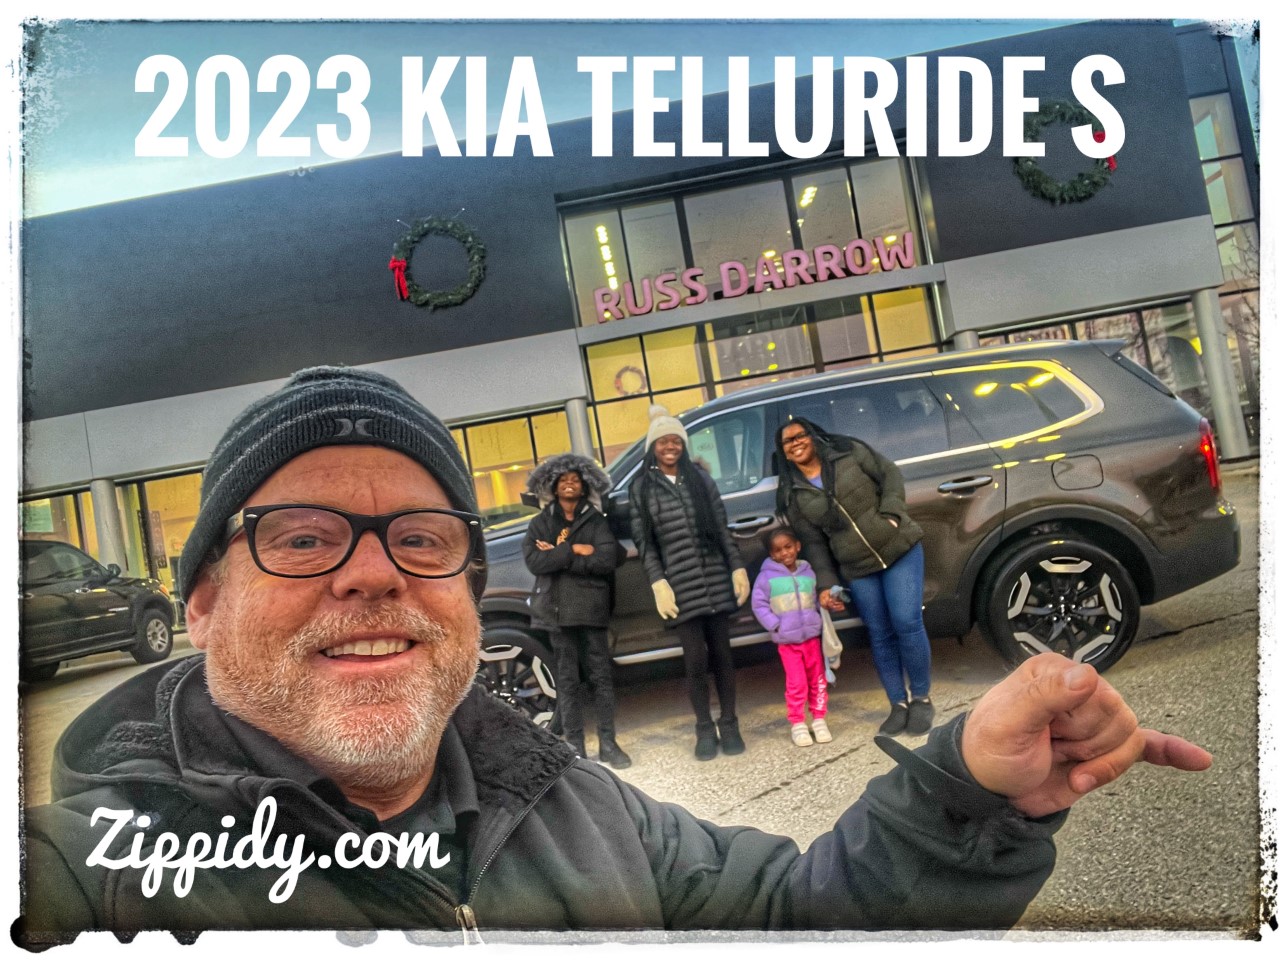 2023 Kia Telluride Delivery with Michael Duda